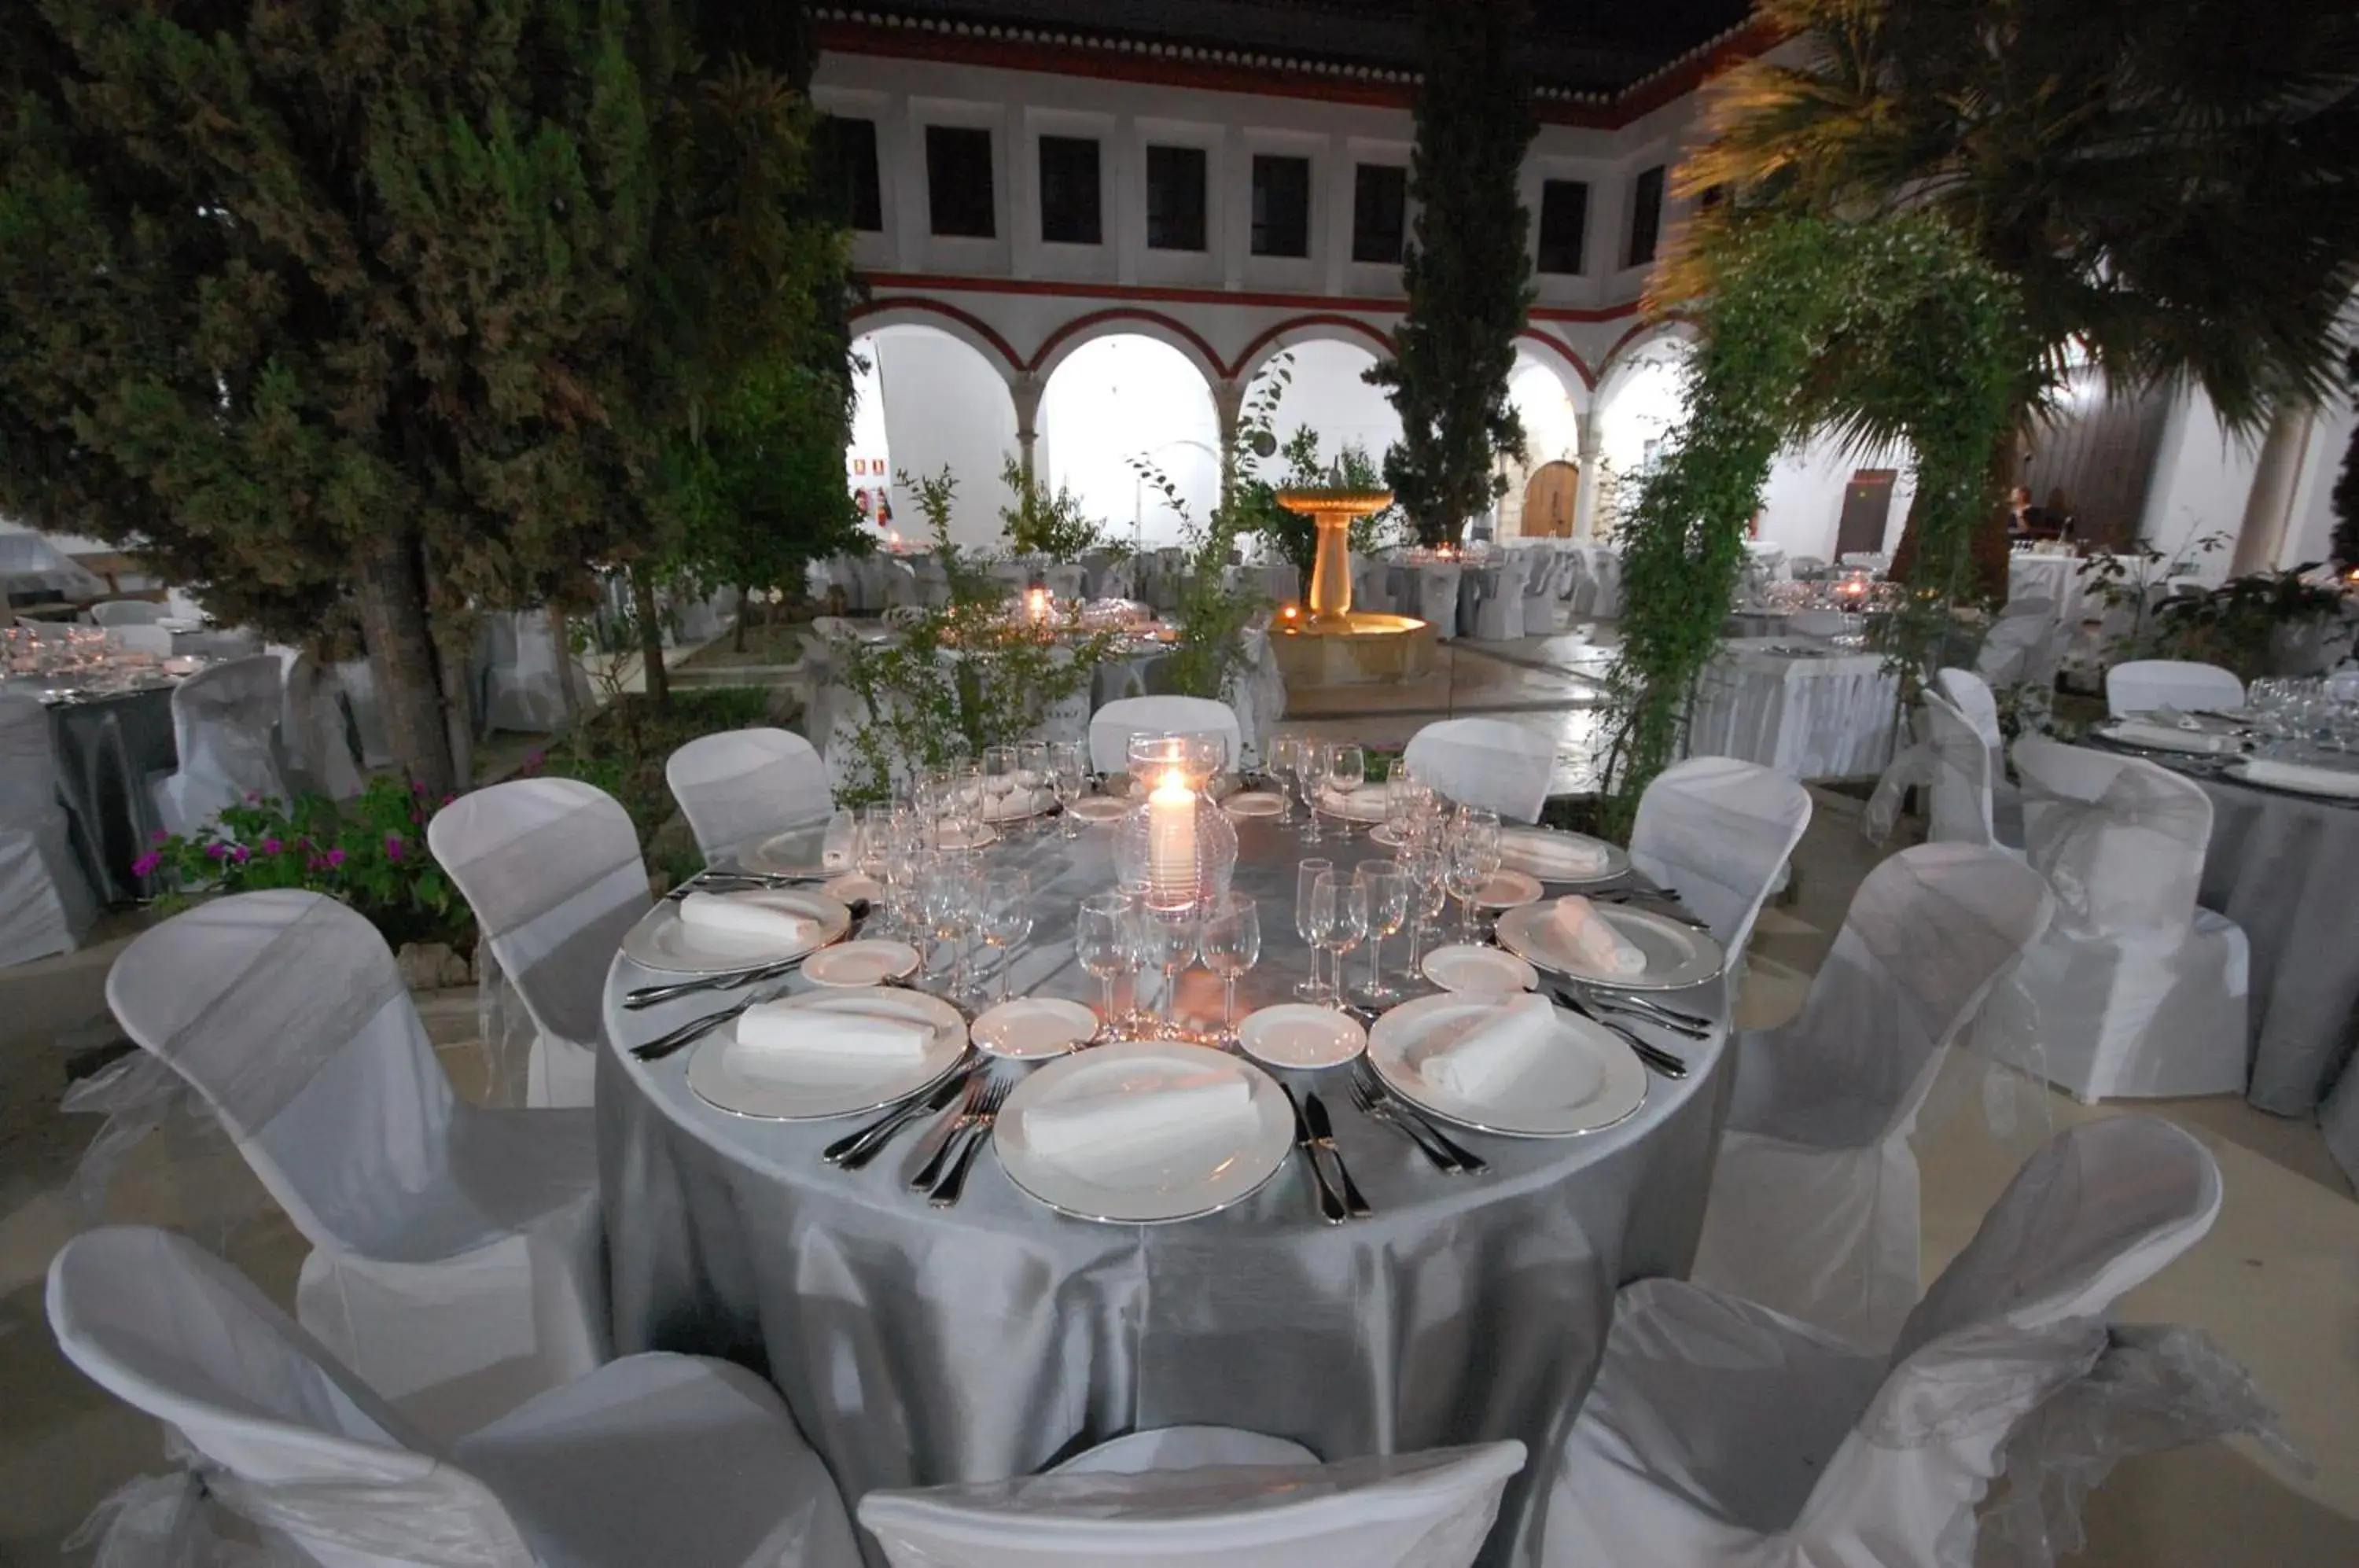 Banquet/Function facilities, Banquet Facilities in Hotel Hospederia San Francisco